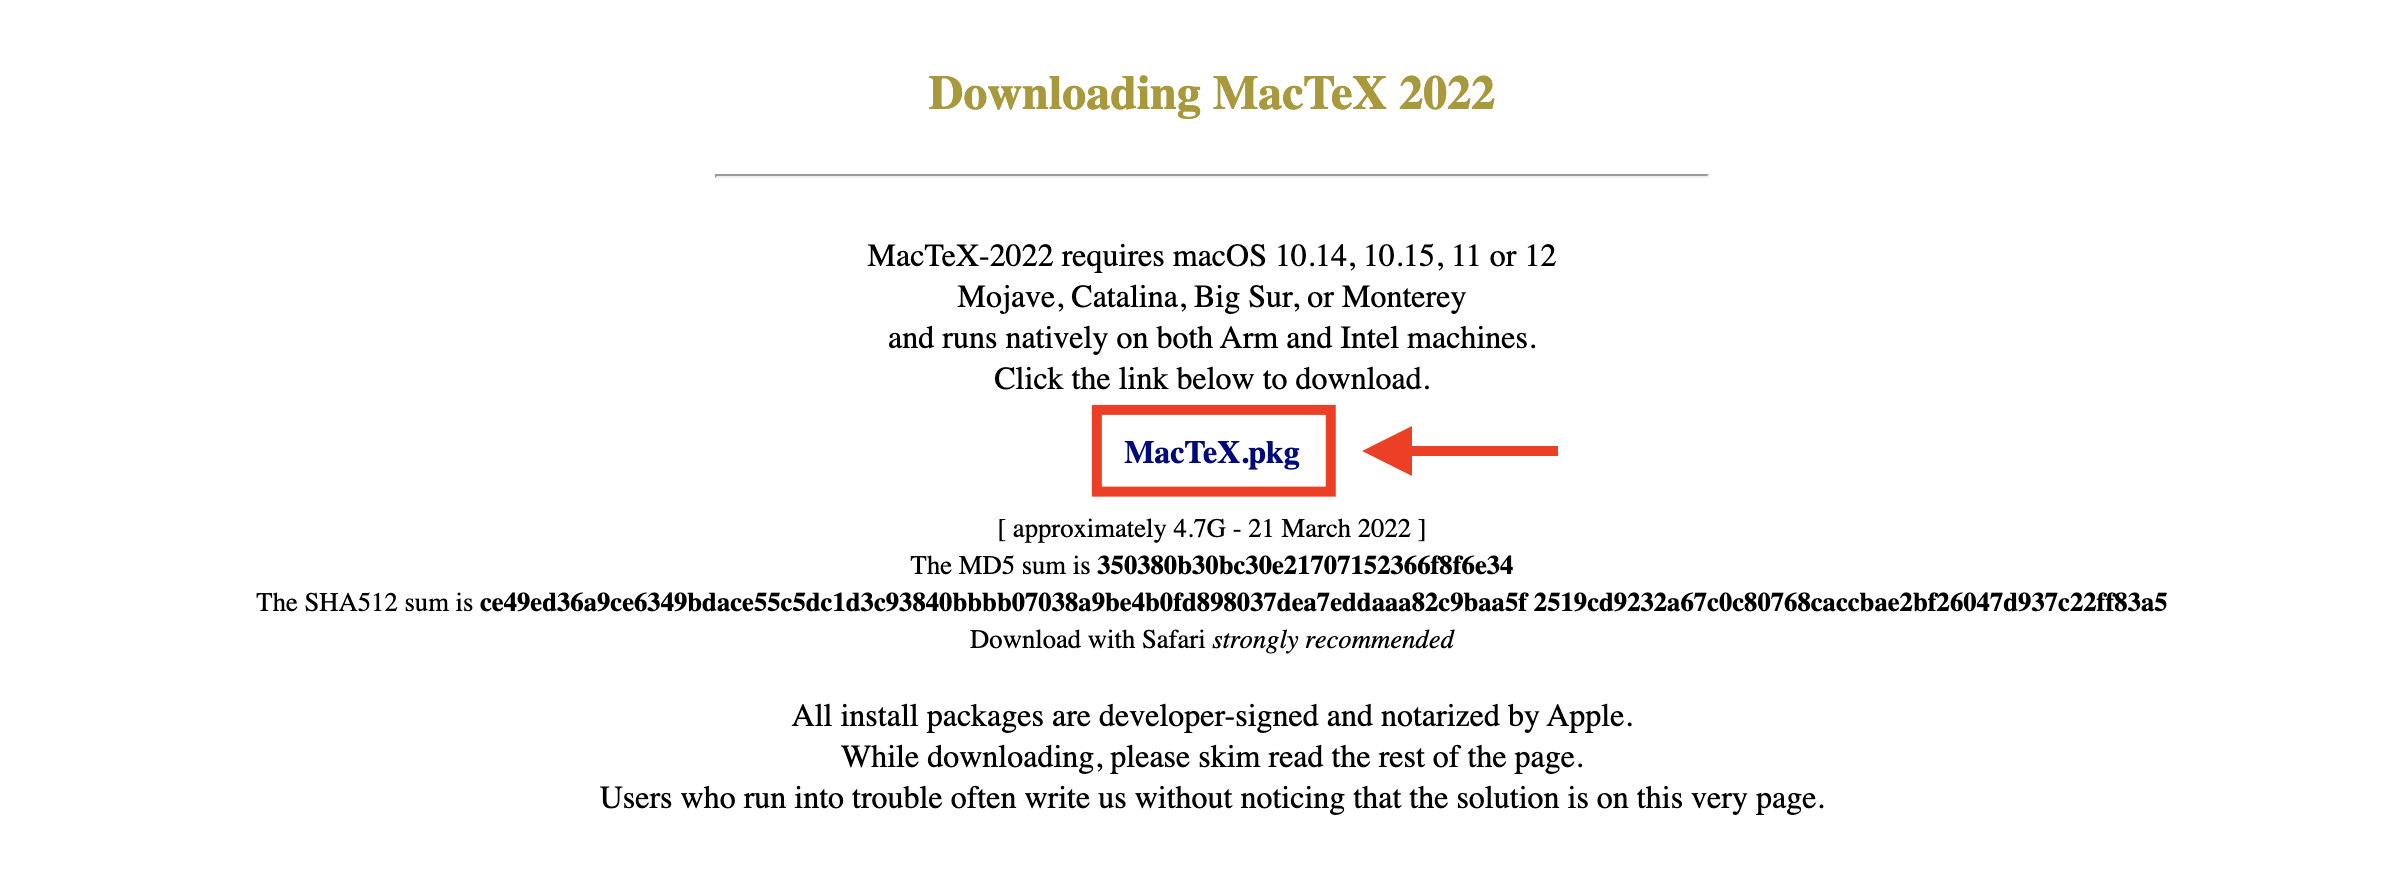 Download MacTeX